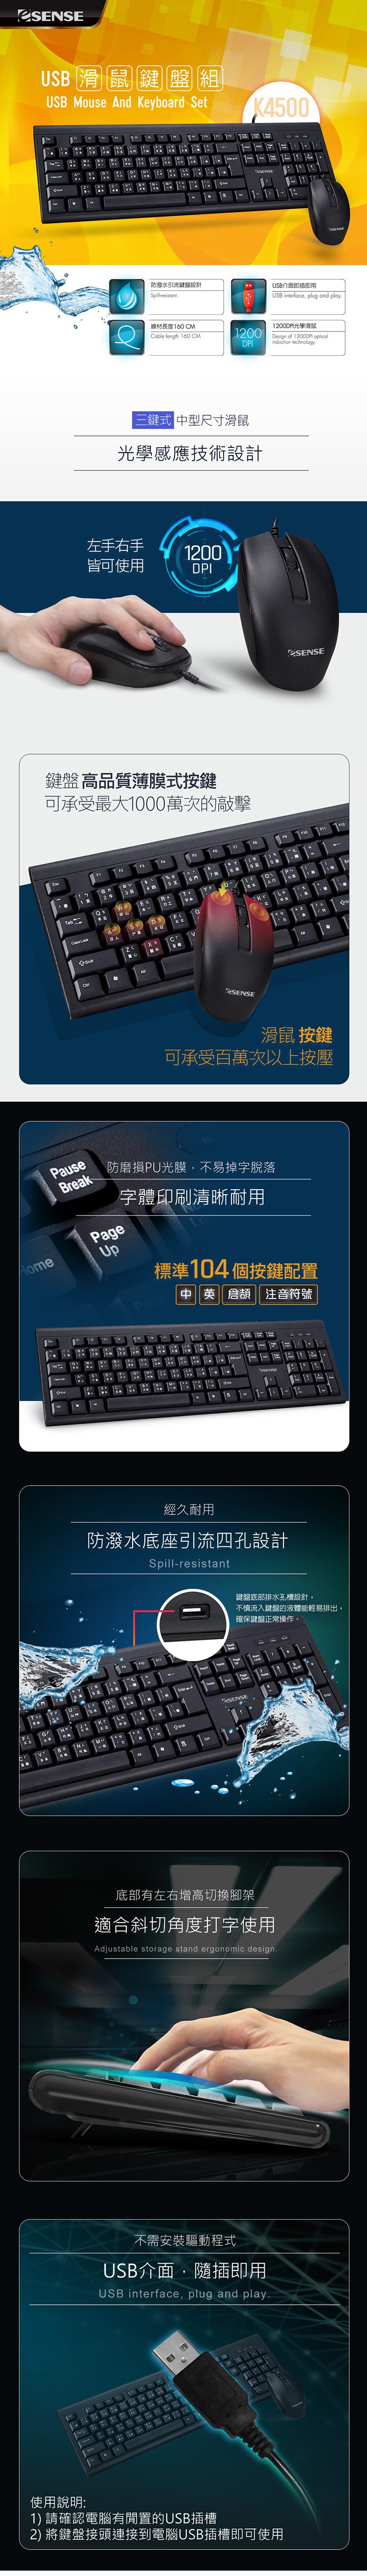 逸盛 K4500 USB 鍵盤滑鼠組-內.jpg